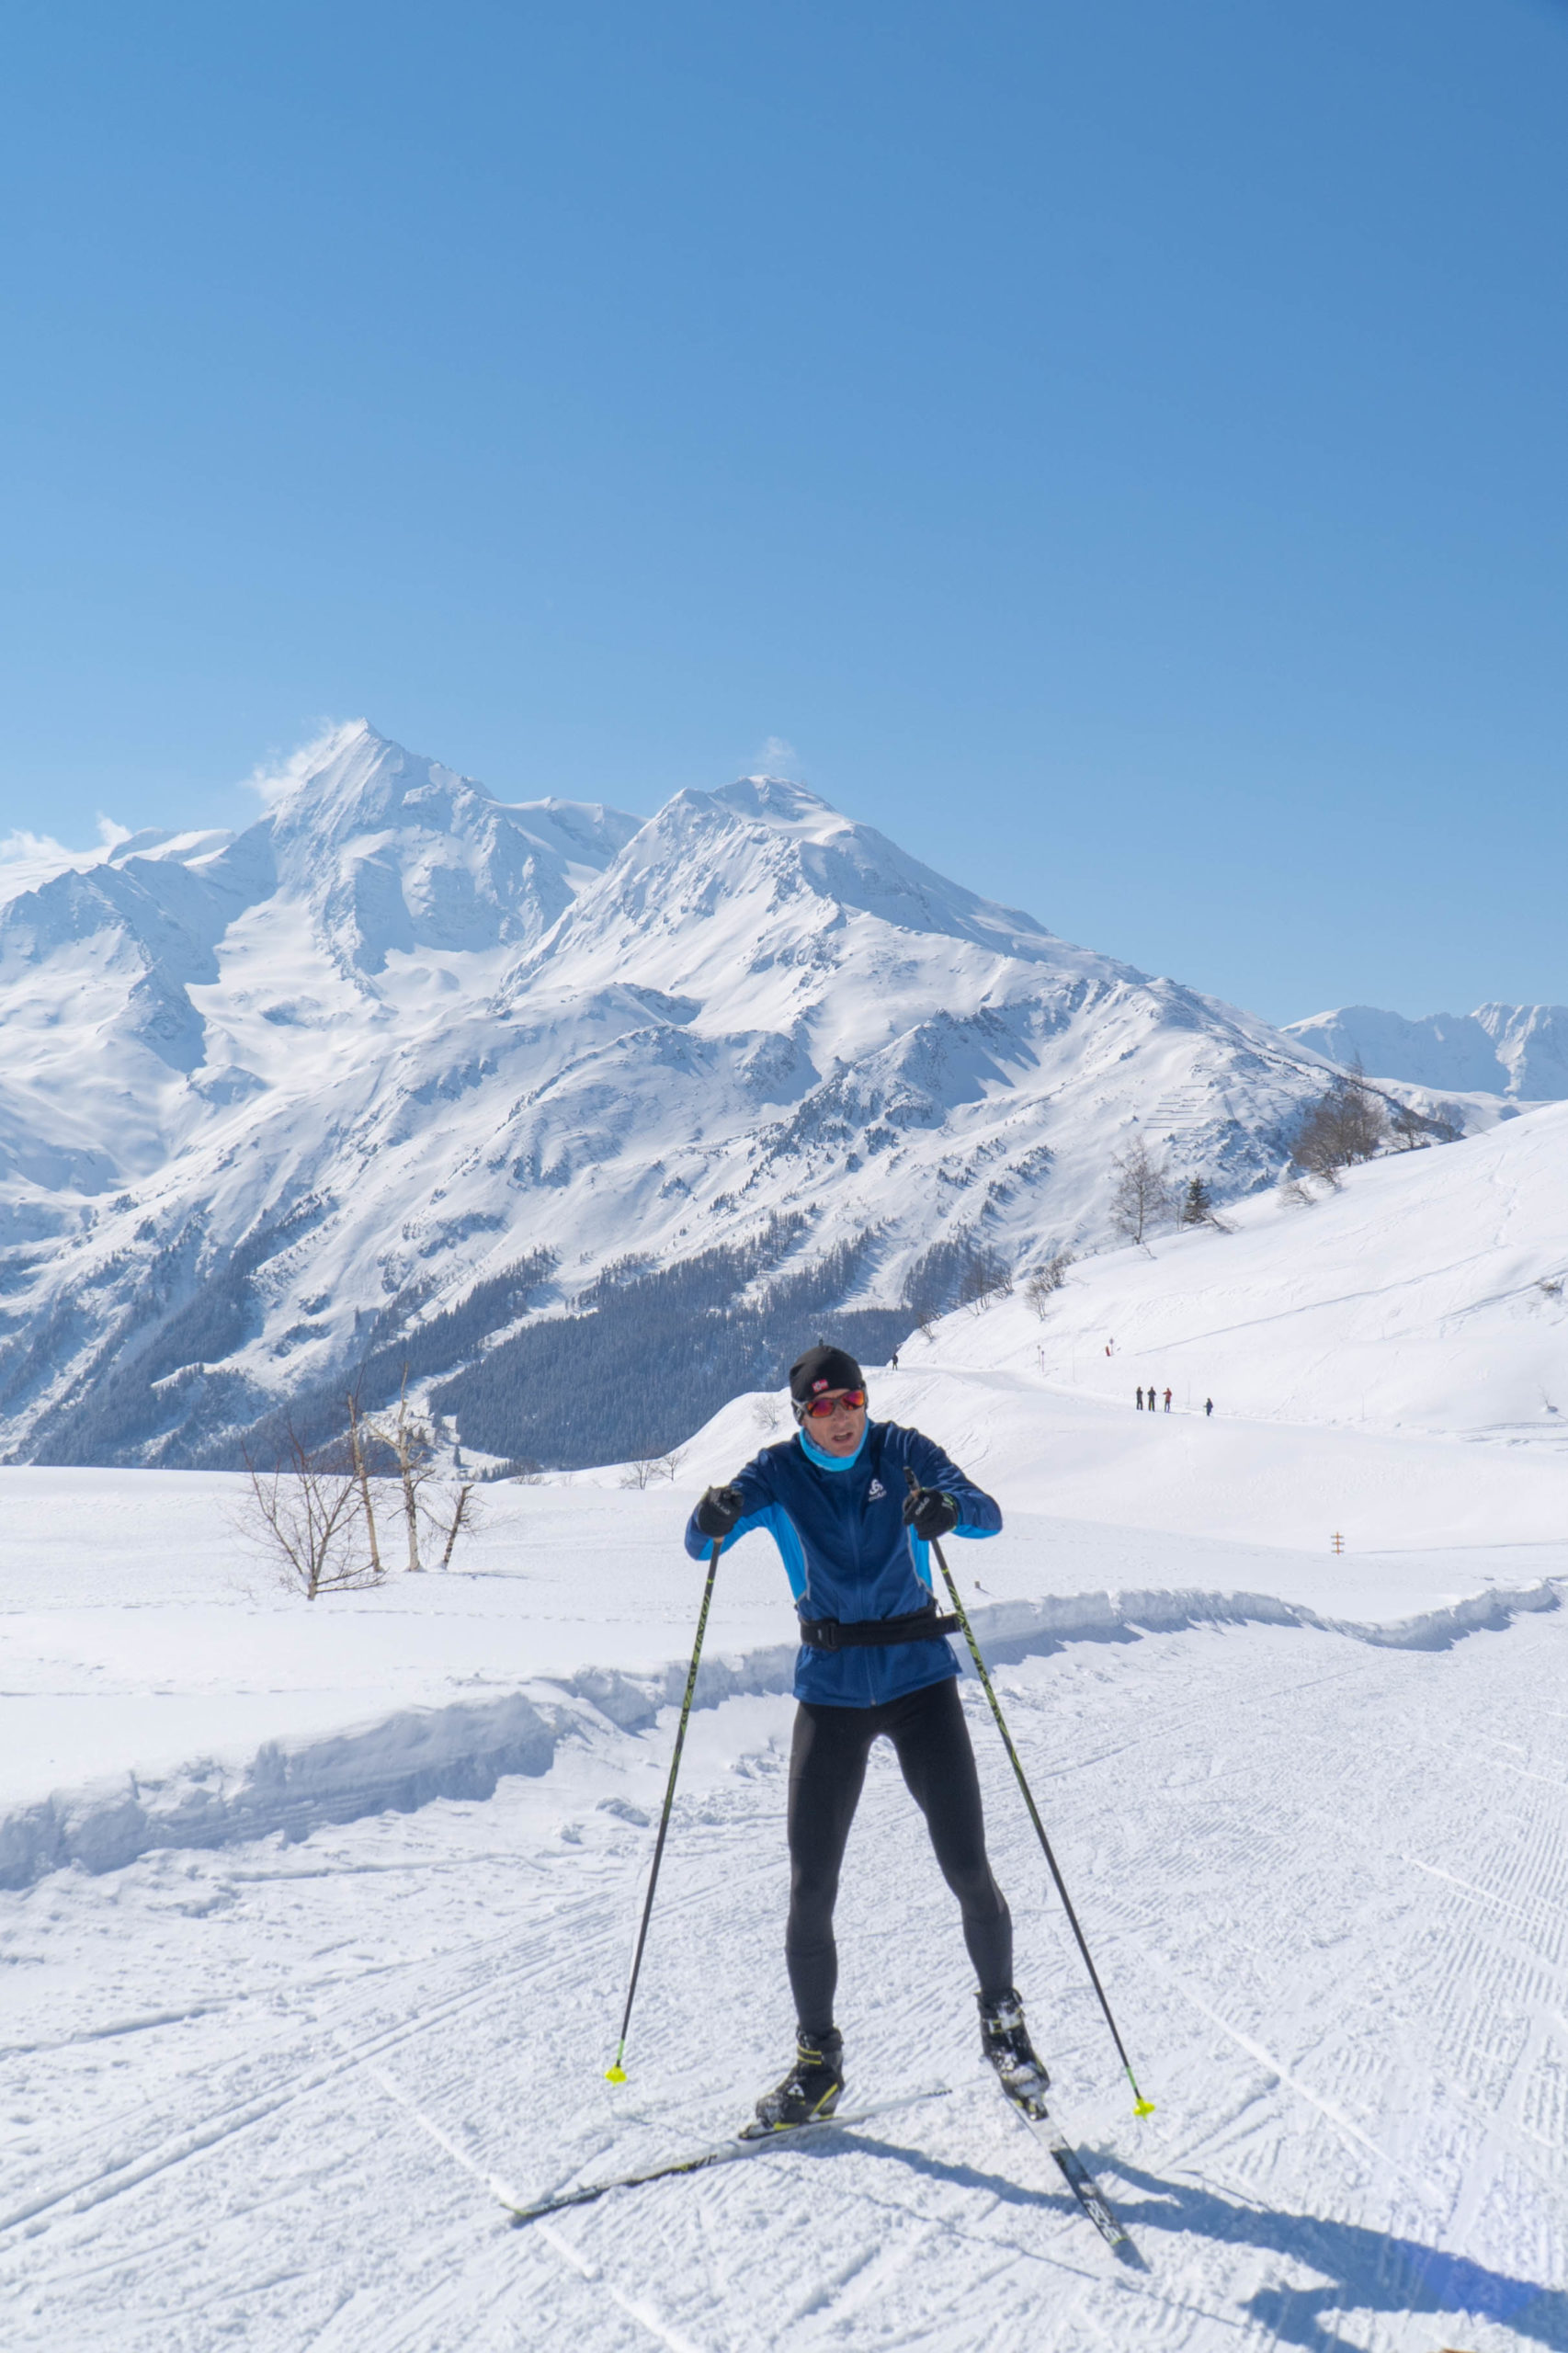 Skieur de fond avec cue dégagée sur les montagnes enneigées.